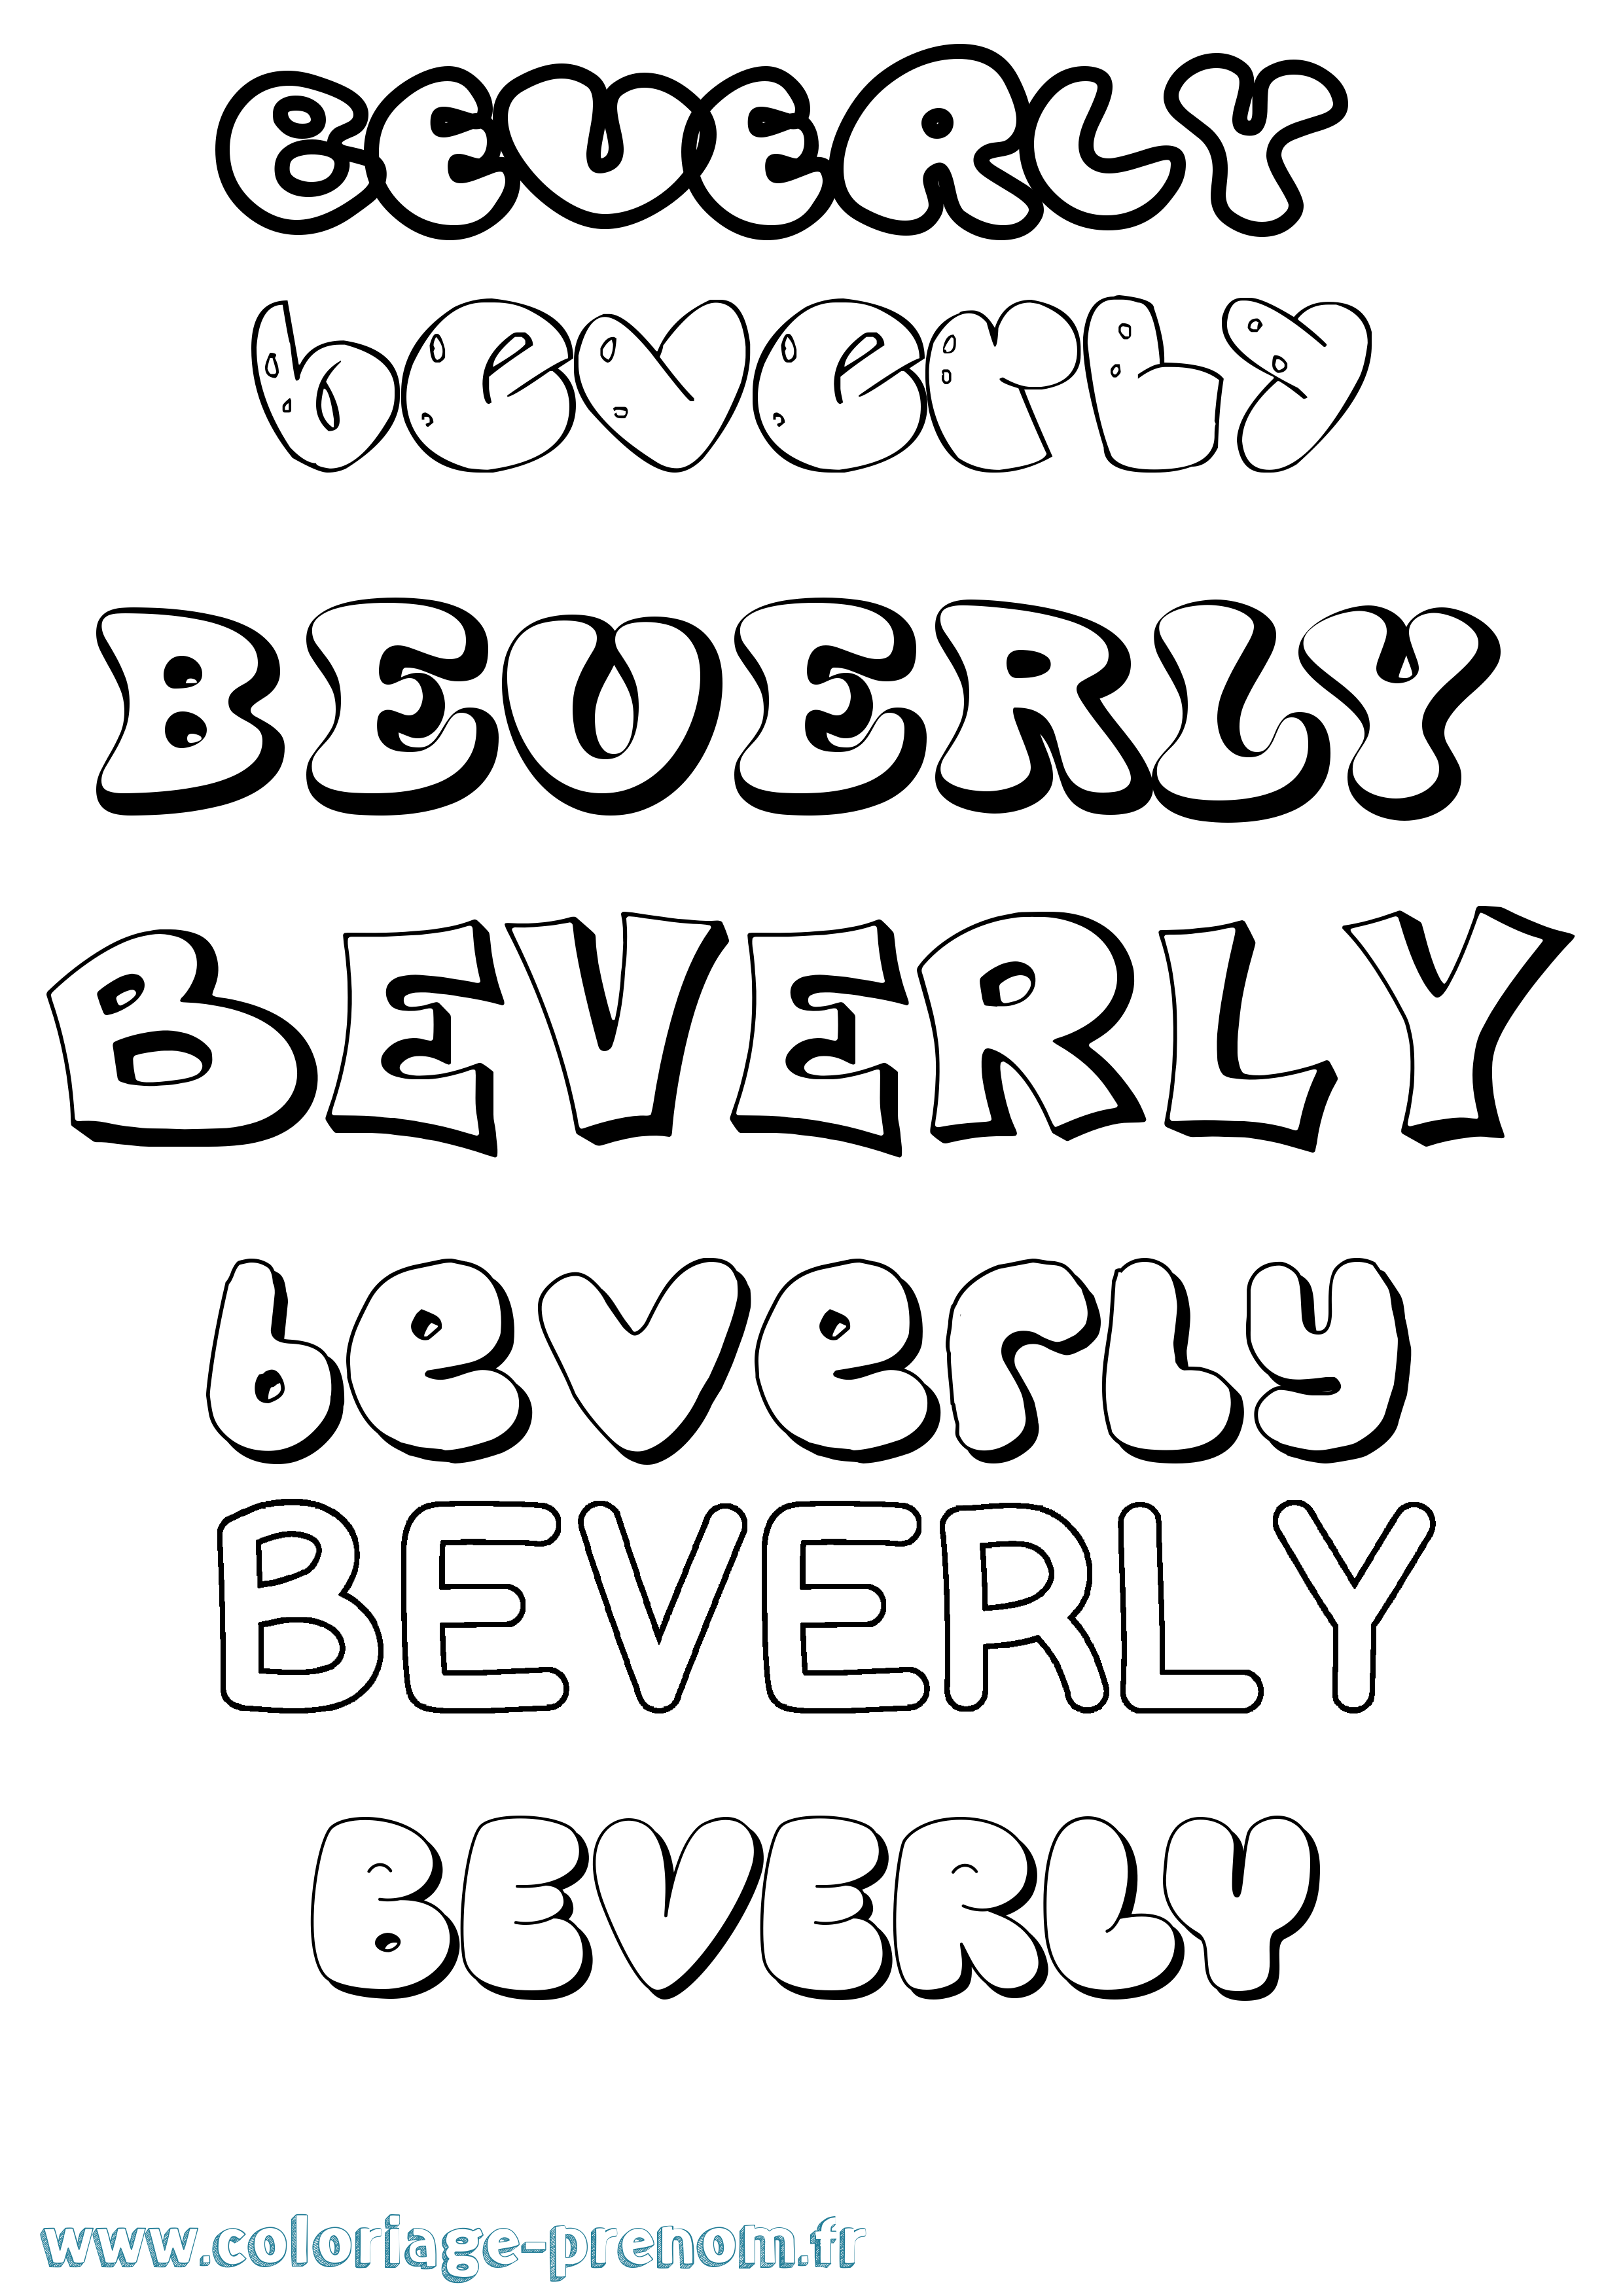 Coloriage prénom Beverly Bubble